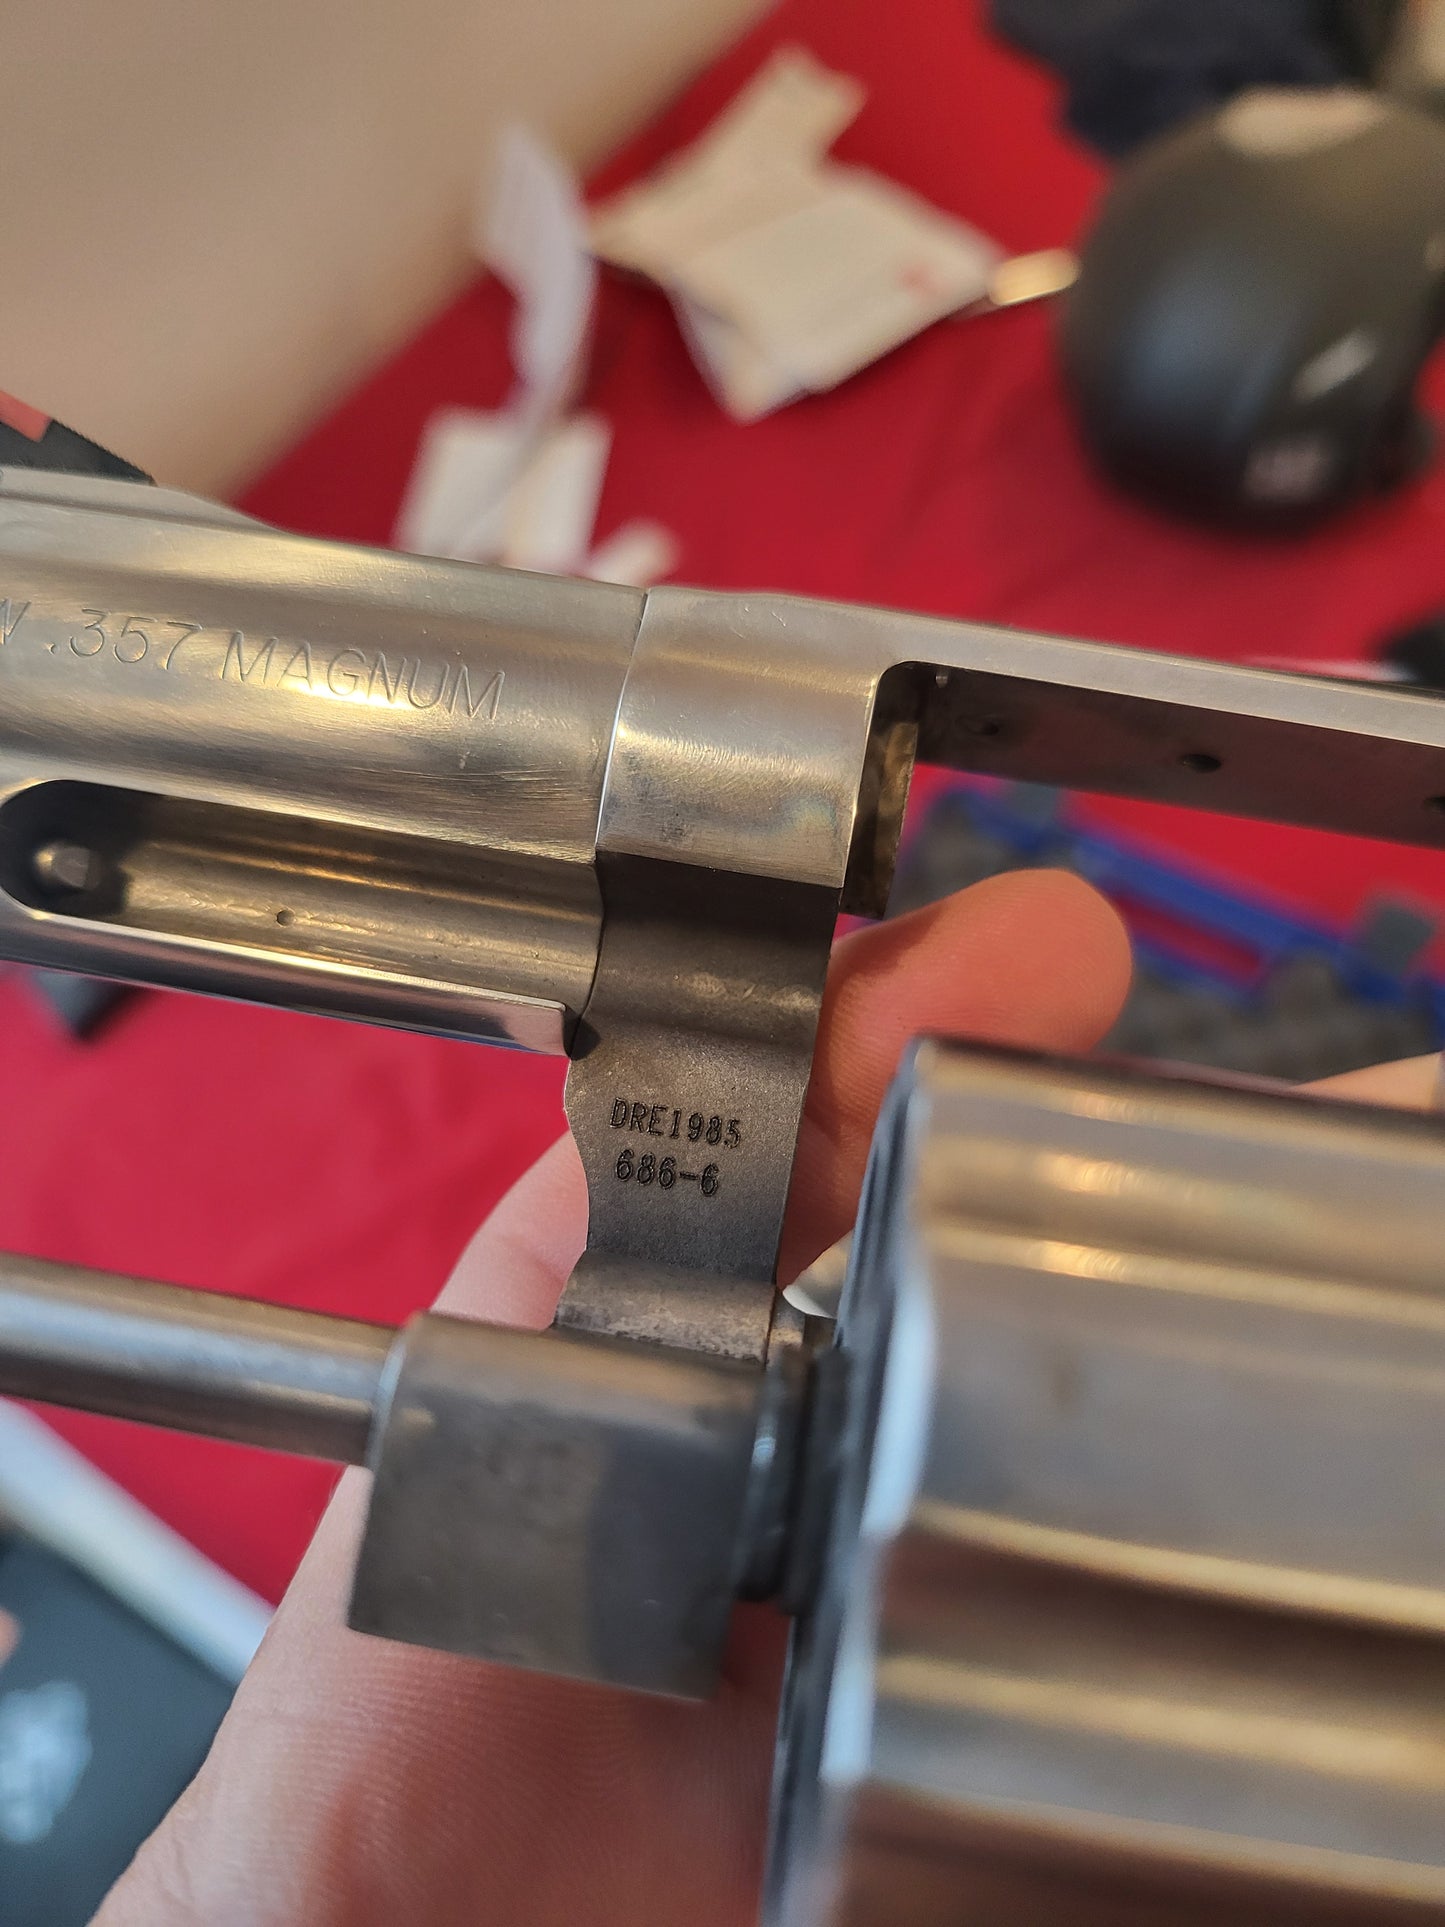 Smith Wesson686-6 Plus 357 Magnum Revolver 7 shot no card fee